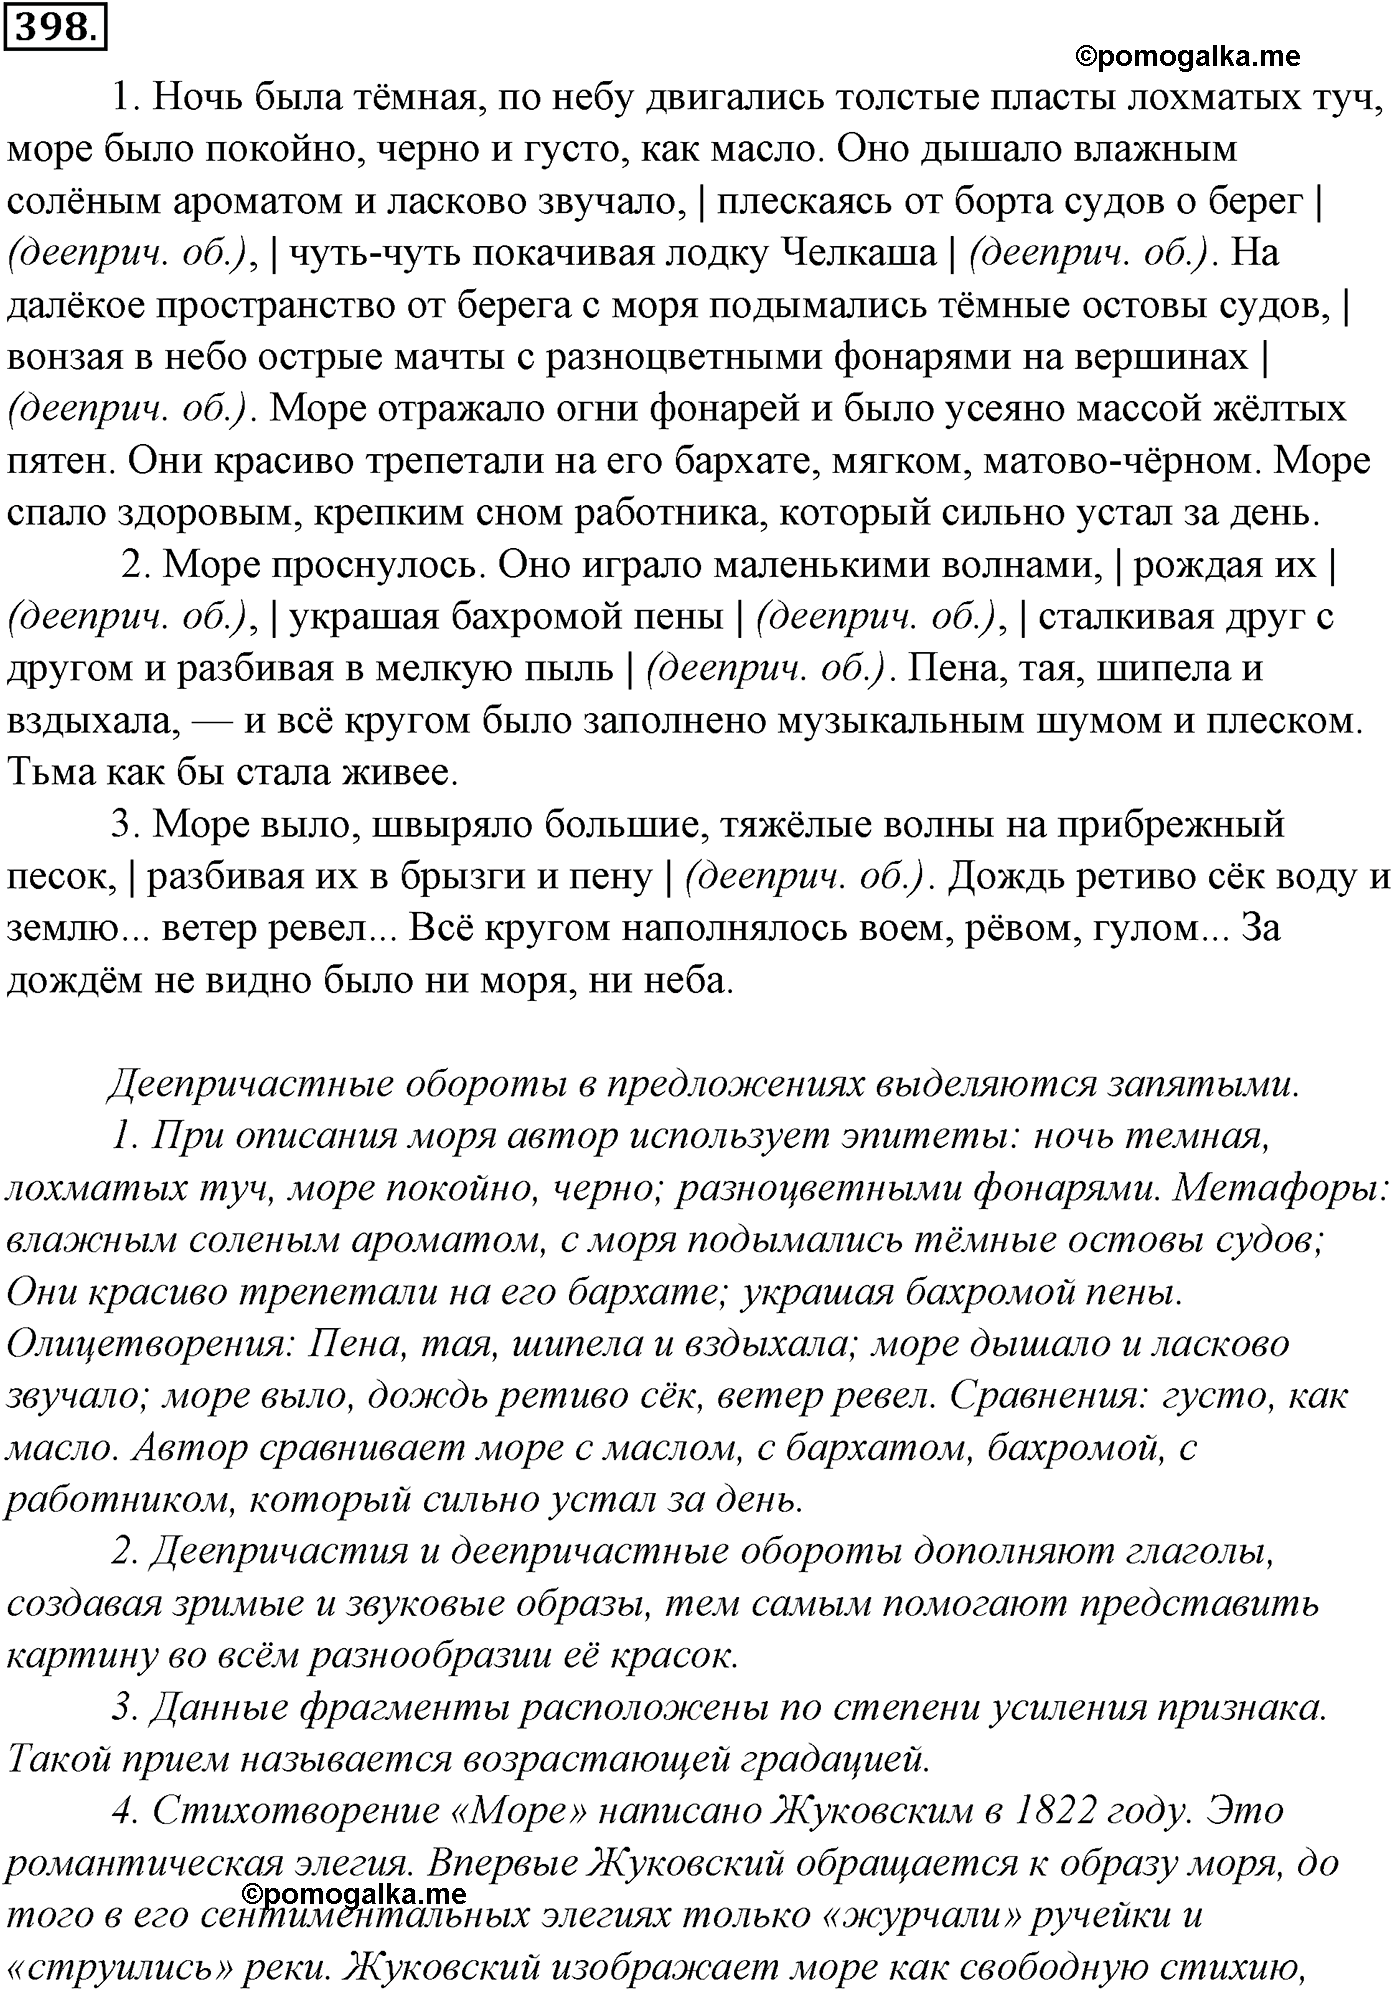 упражнение №398 русский язык 10-11 класс Гольцова